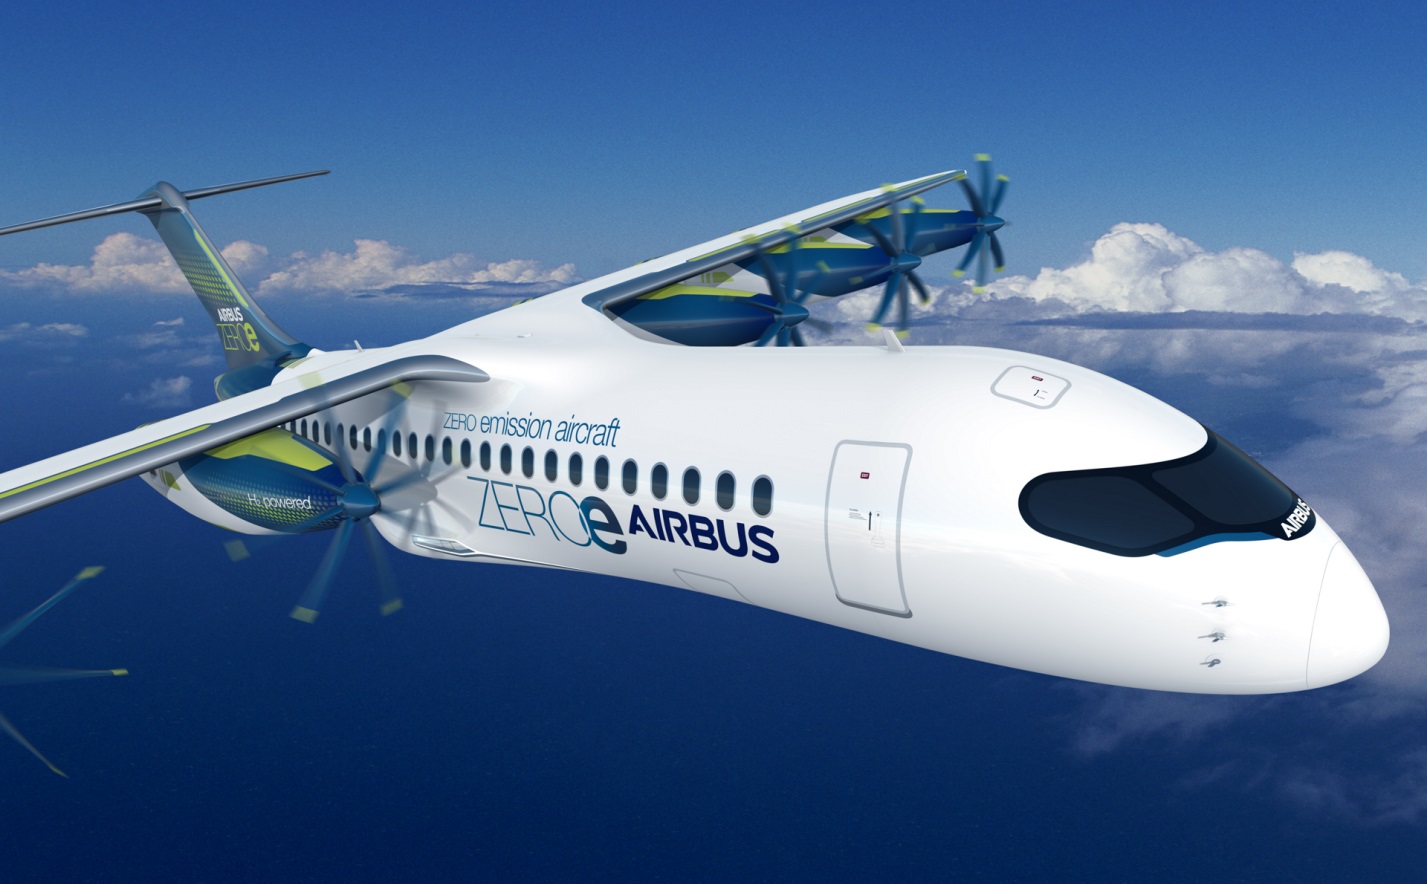 За результатами першого кварталу поточного року прибуток аерокосмічної компанії Airbus збільшився до 1,22 мільярда євро, порівняно з 362 мільйонами євро роком раніше.